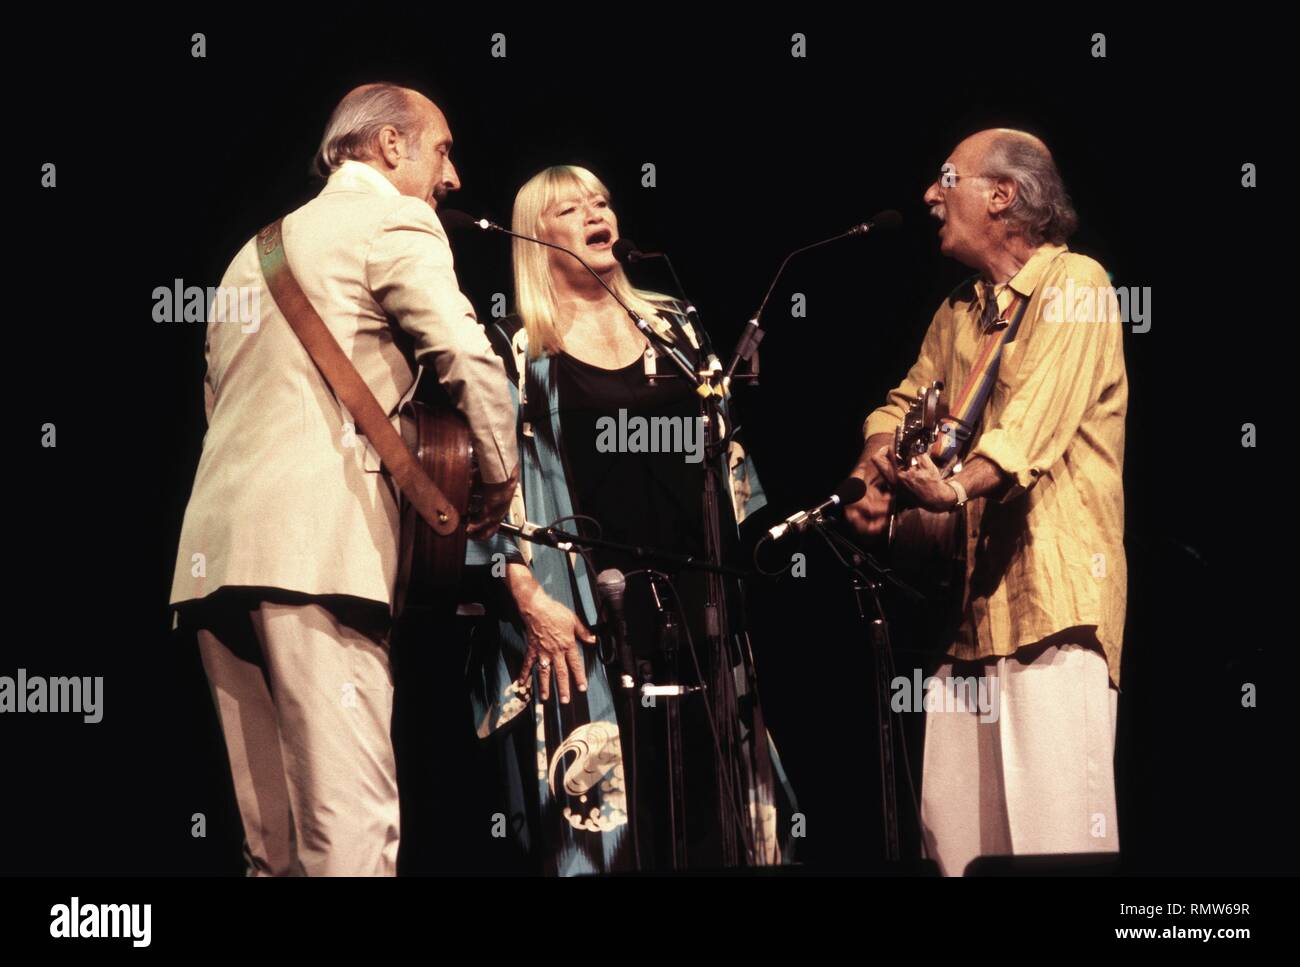 Le trio chant folklorique de Peter, Paul et Mary sont présentés sur scène pendant un concert en direct de l'apparence. Banque D'Images